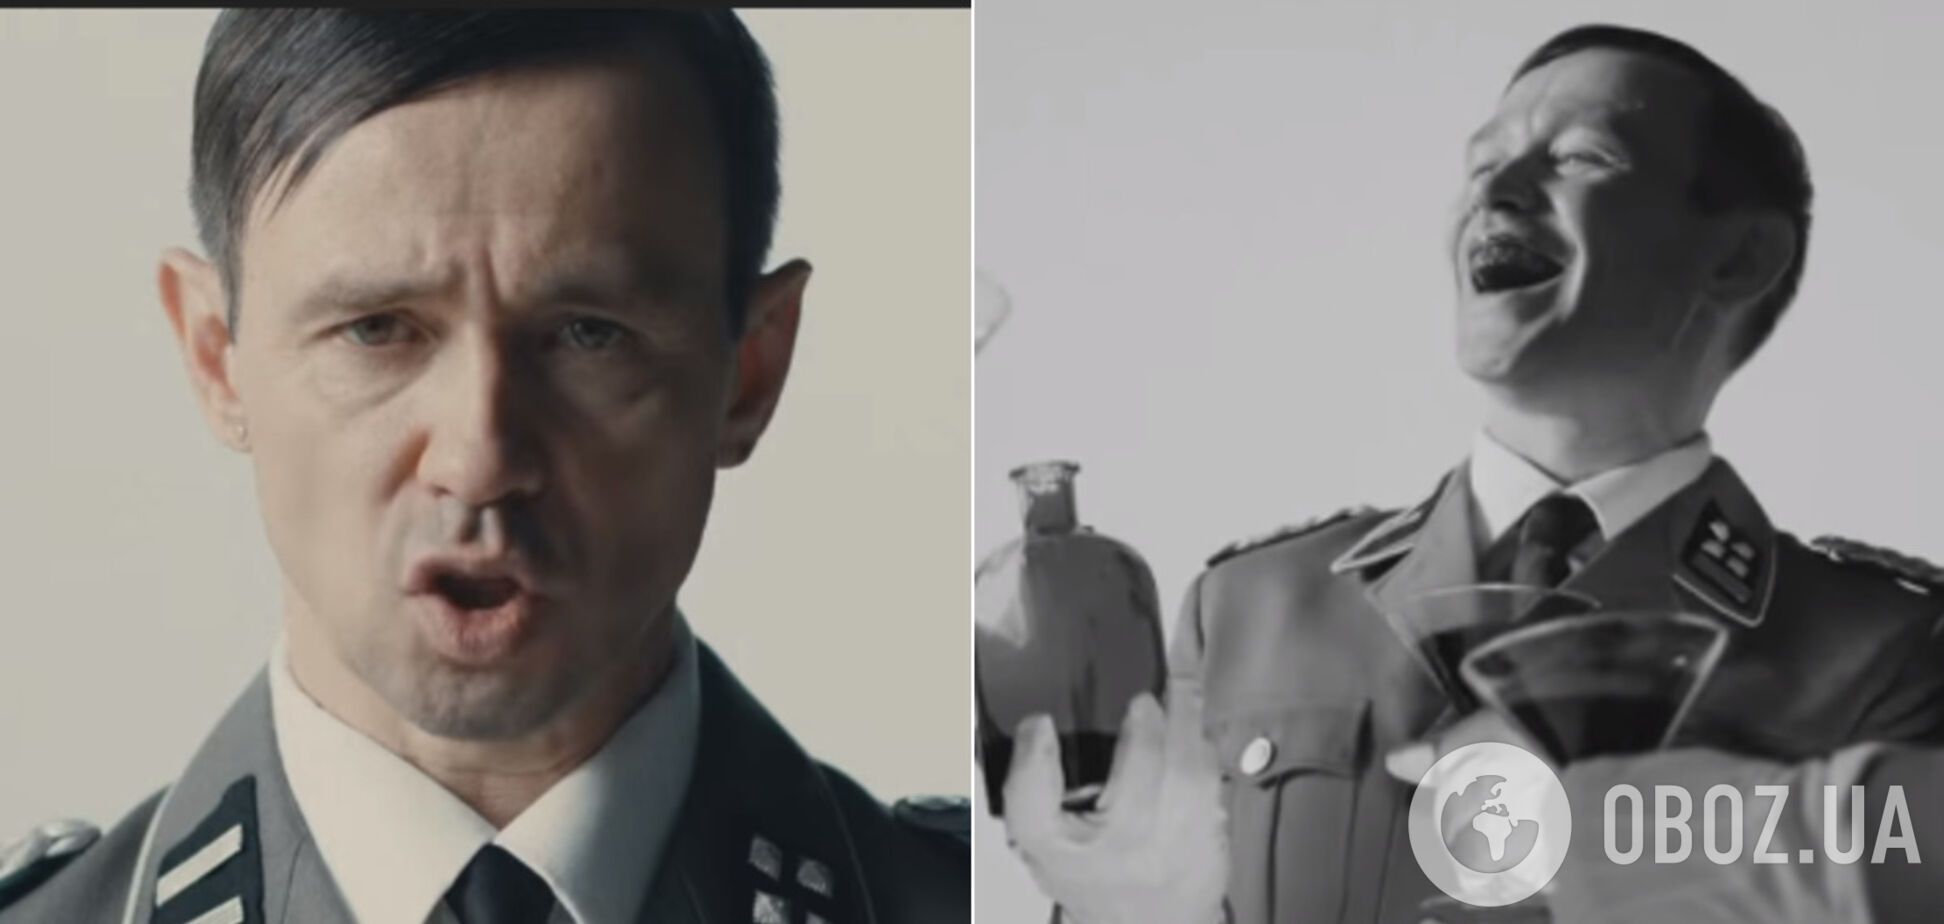 'Рыдающая страна тонет в соплях!' 48-летний Дельфин выпустил мощное видео с Гитлером и похоронами Сталина